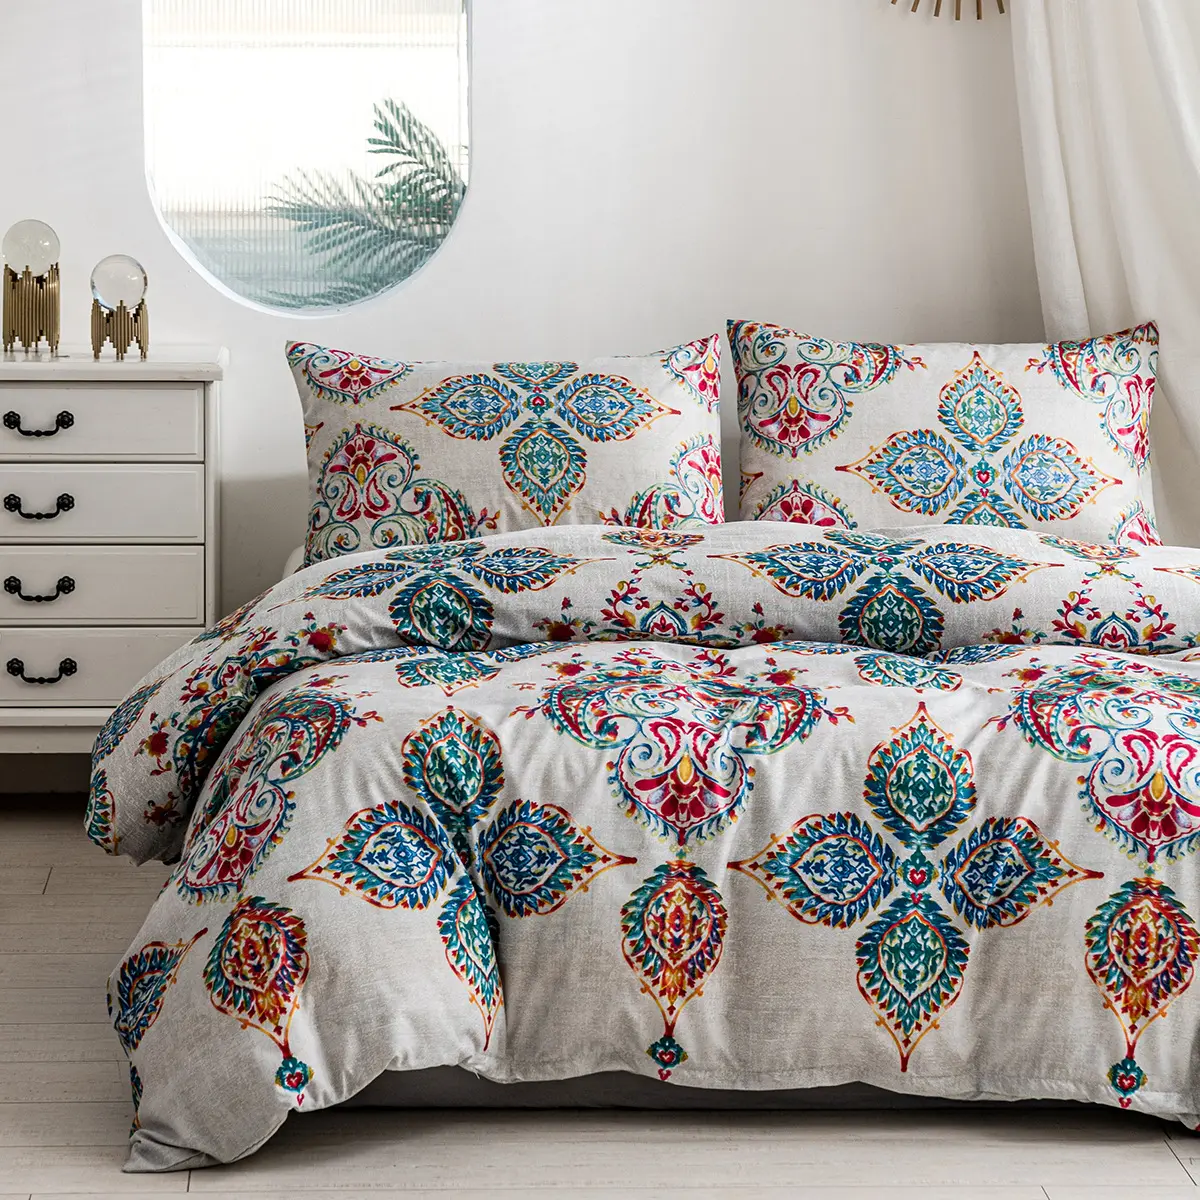 Hot Sale New Design Us King Guangzhou Bedding Set Wholesale Comforter Sets Bed Cover Bedding Set